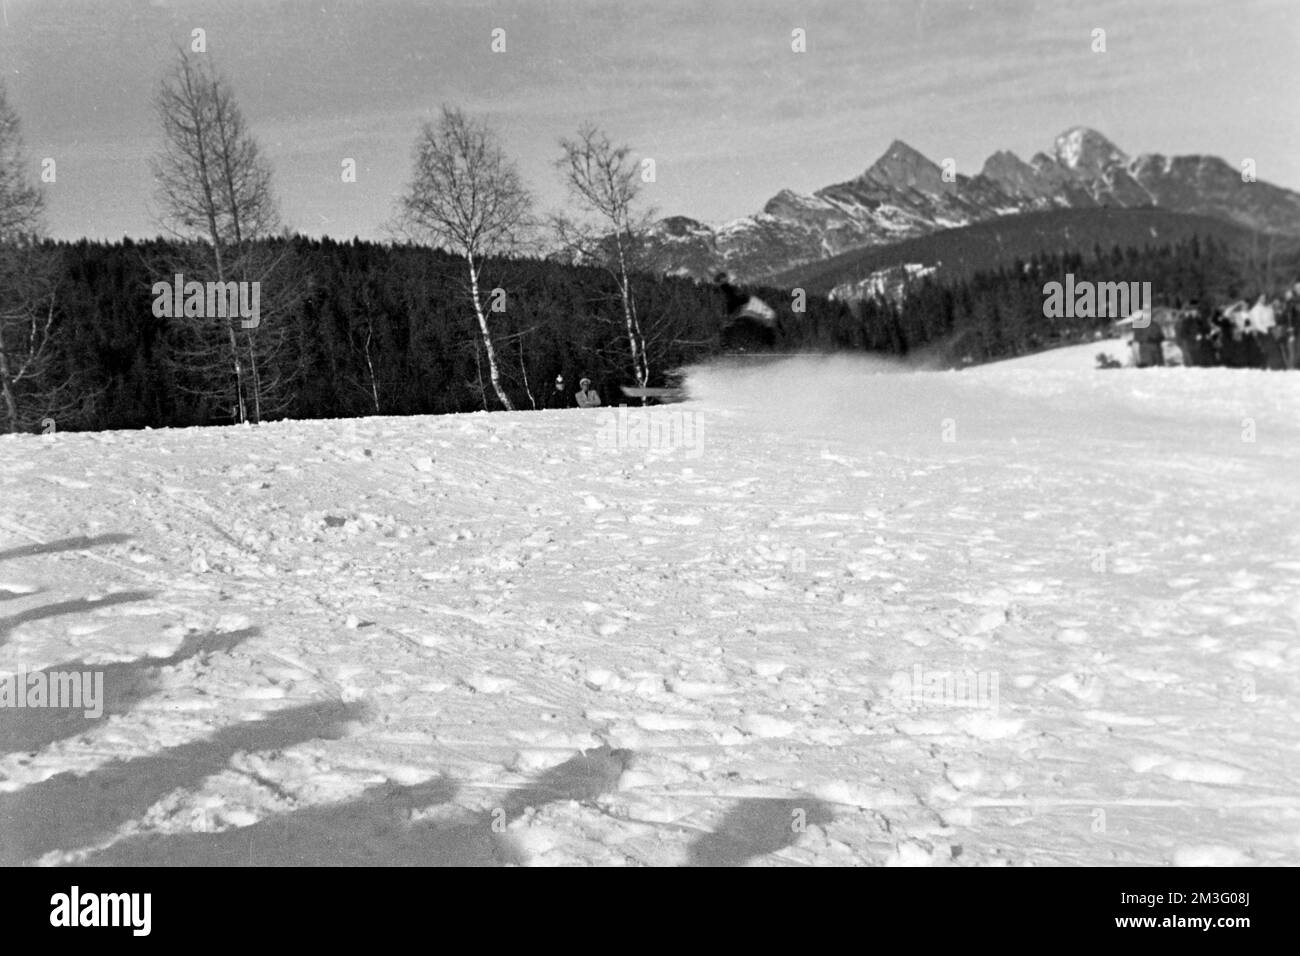 Die Große Olympiaschanze bei den Olympischen Winterspielen in Garmisch-Partenkirchen, 1936. The Great Olympic Ski Jump at the Winter Olympics in Garmisch-Partenkirchen, 1936. Stock Photo